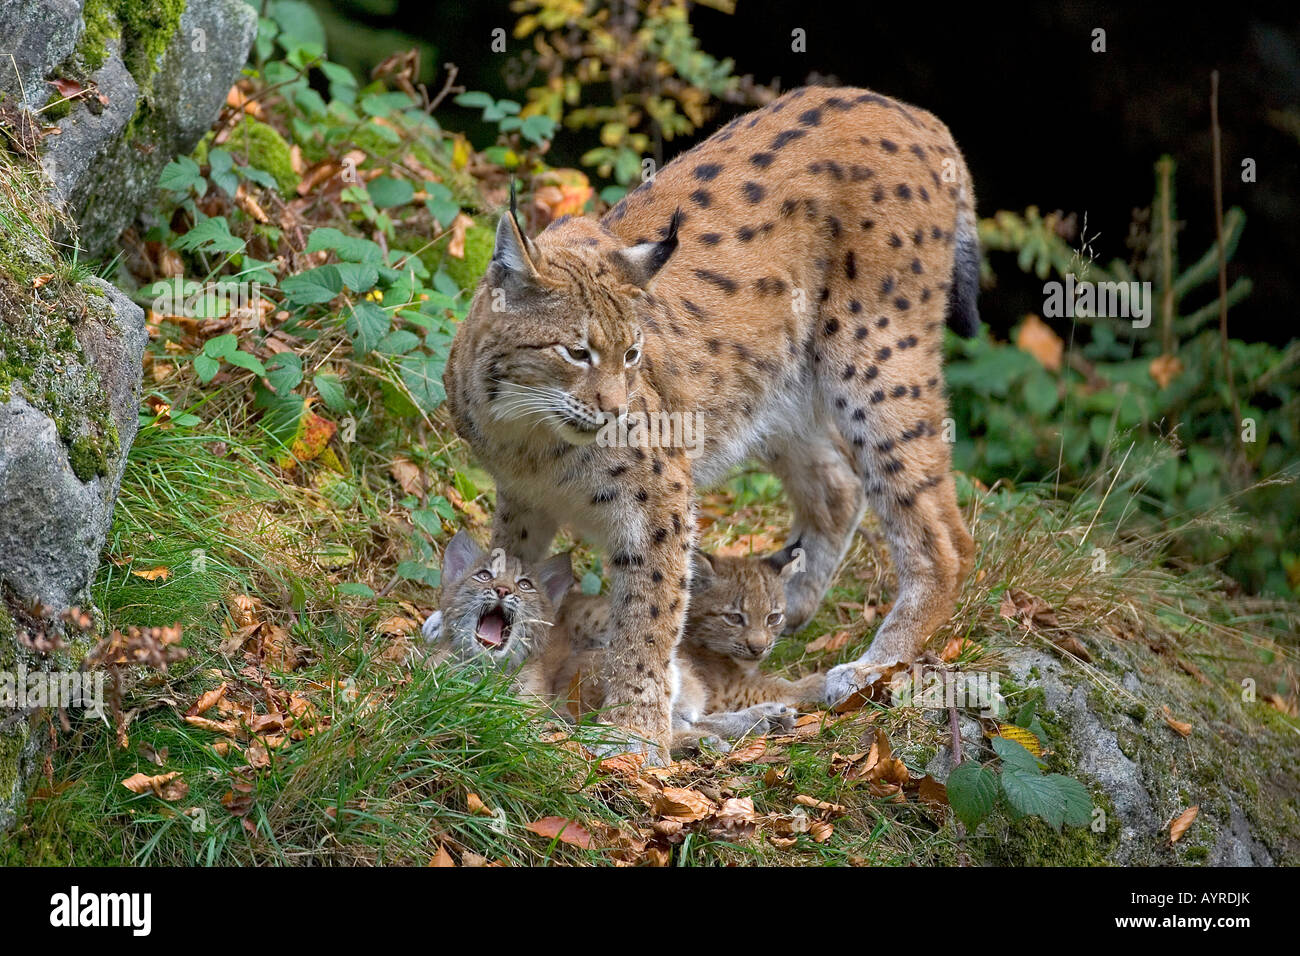 Le Lynx eurasien (Lynx lynx) et d'oursons, Nationalpark Bayerischer Wald (forêt de Bavière), Bavaria, Germany, Europe Banque D'Images